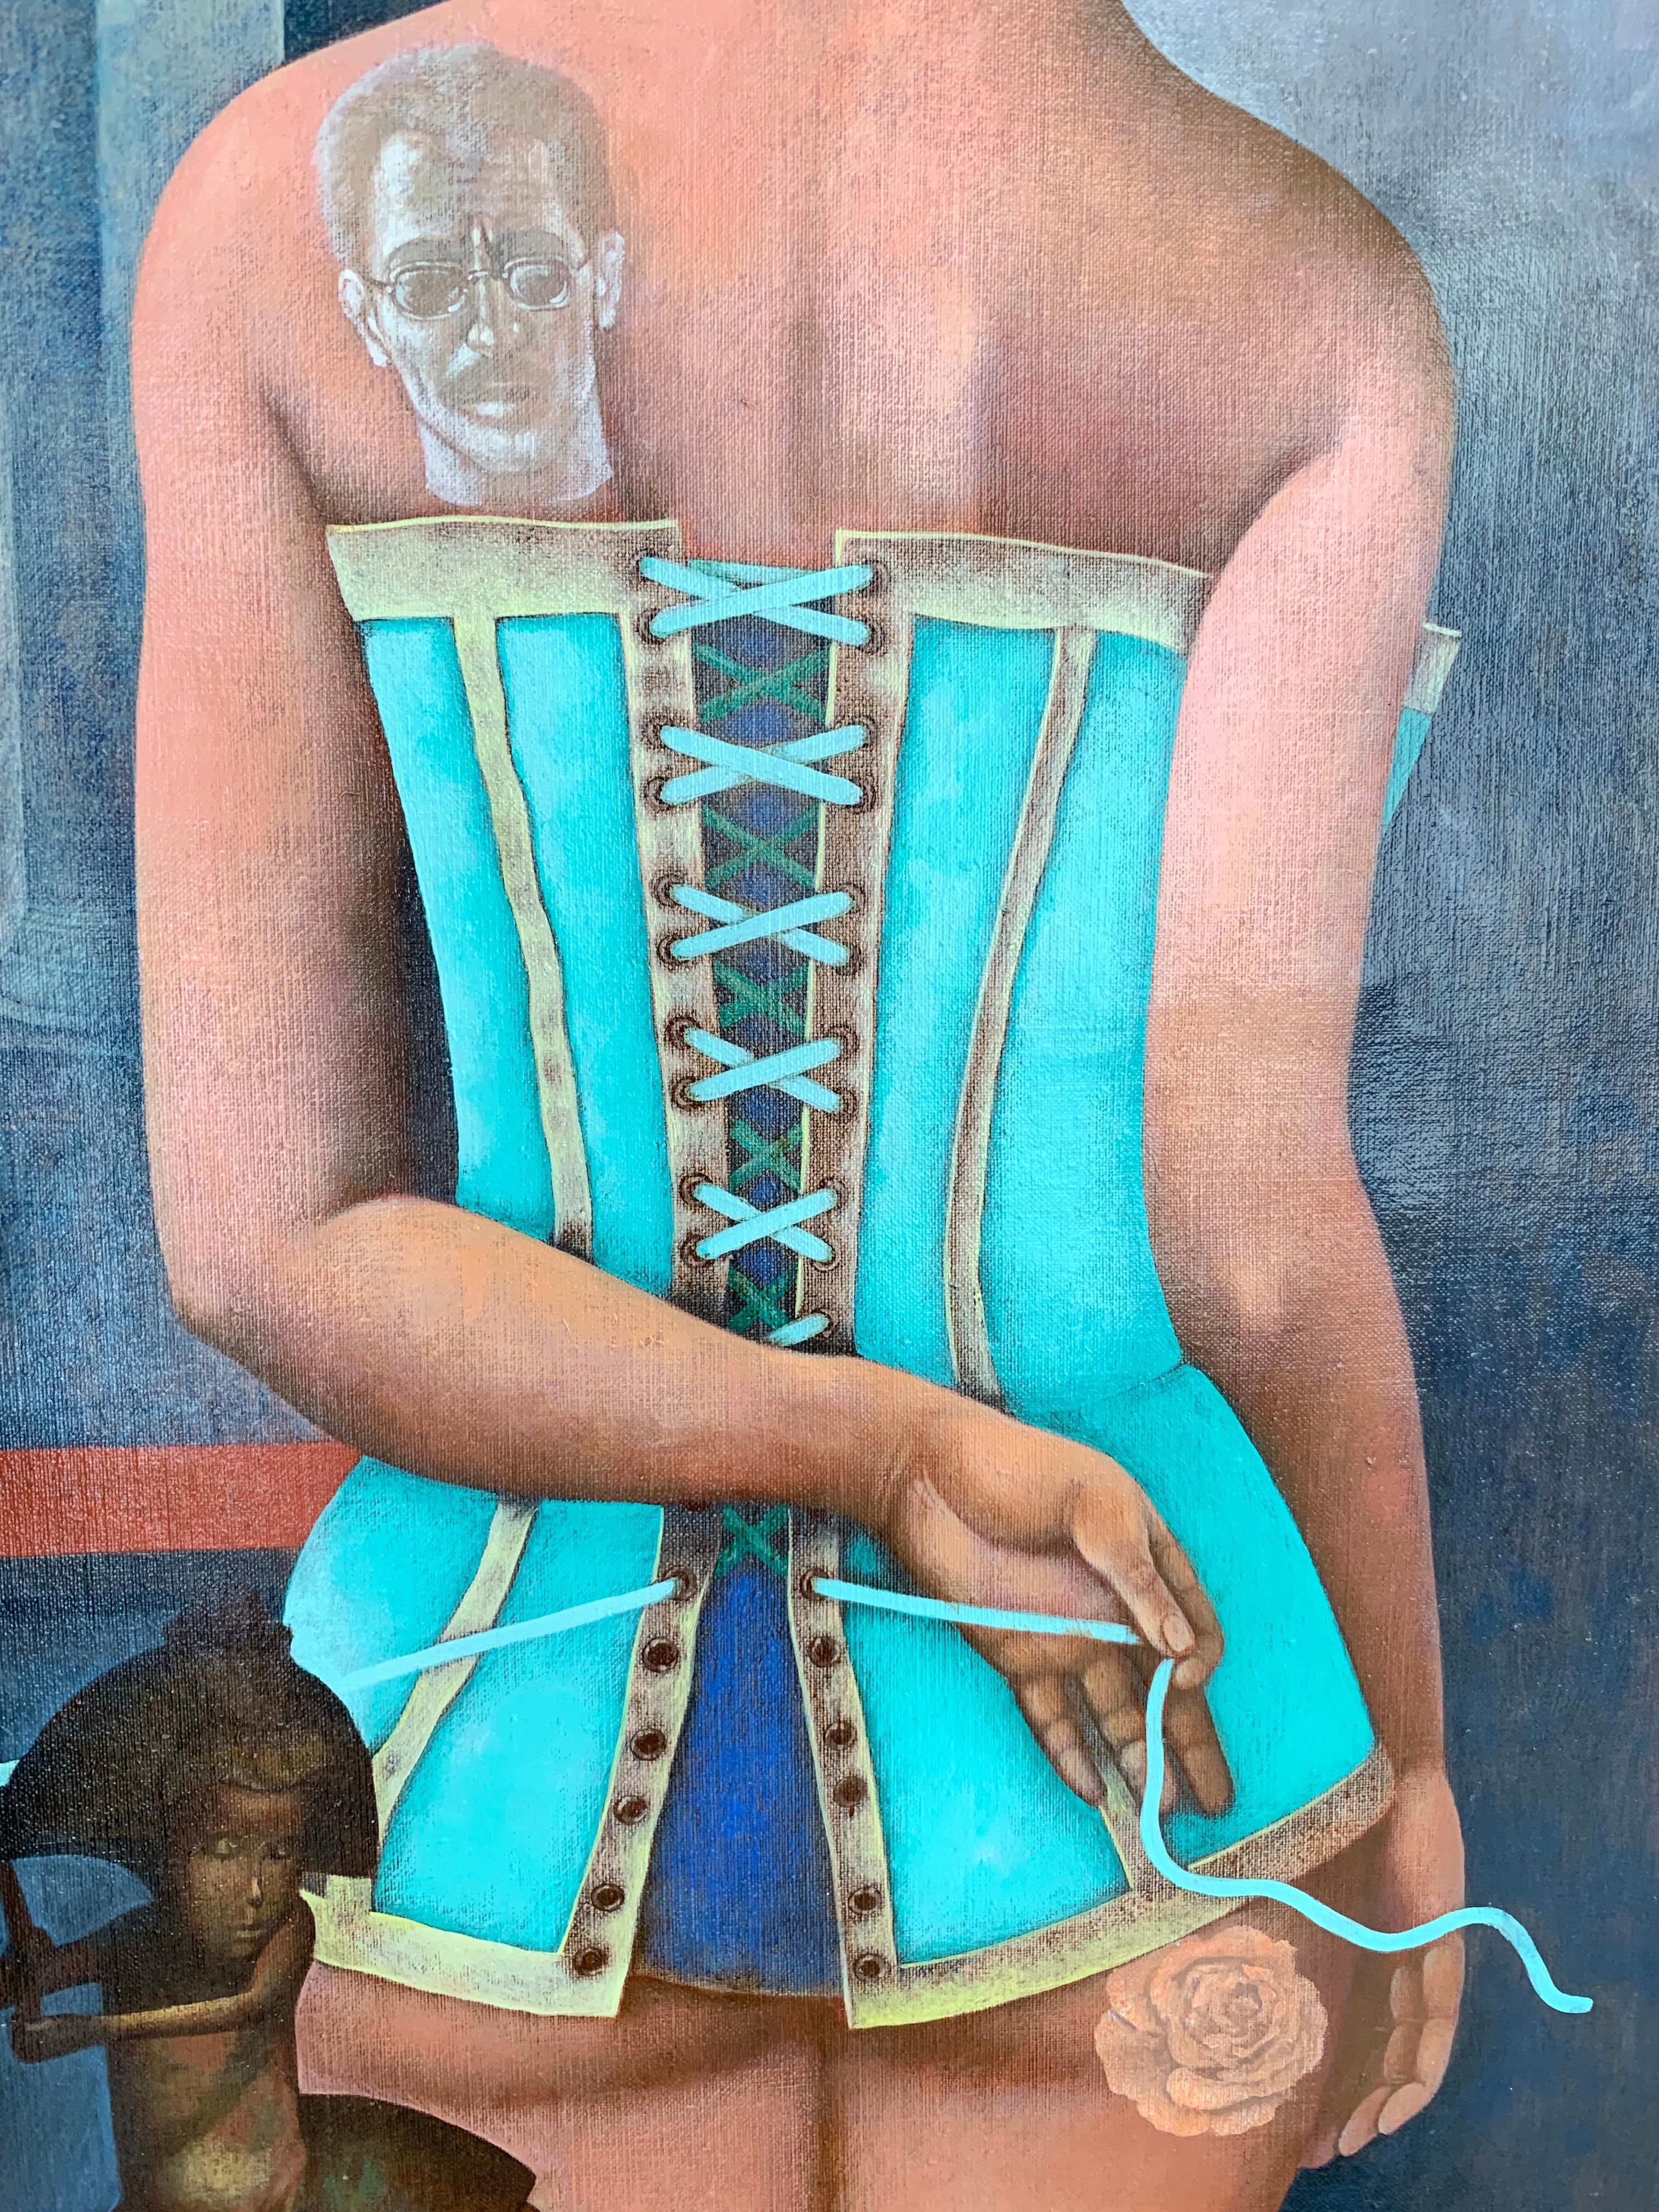 Das Korsett - ein Gänseblümchenmädchen in Korsett, in Grau, Blau, Braun und Türkis gefertigt – Painting von Igor Fomin